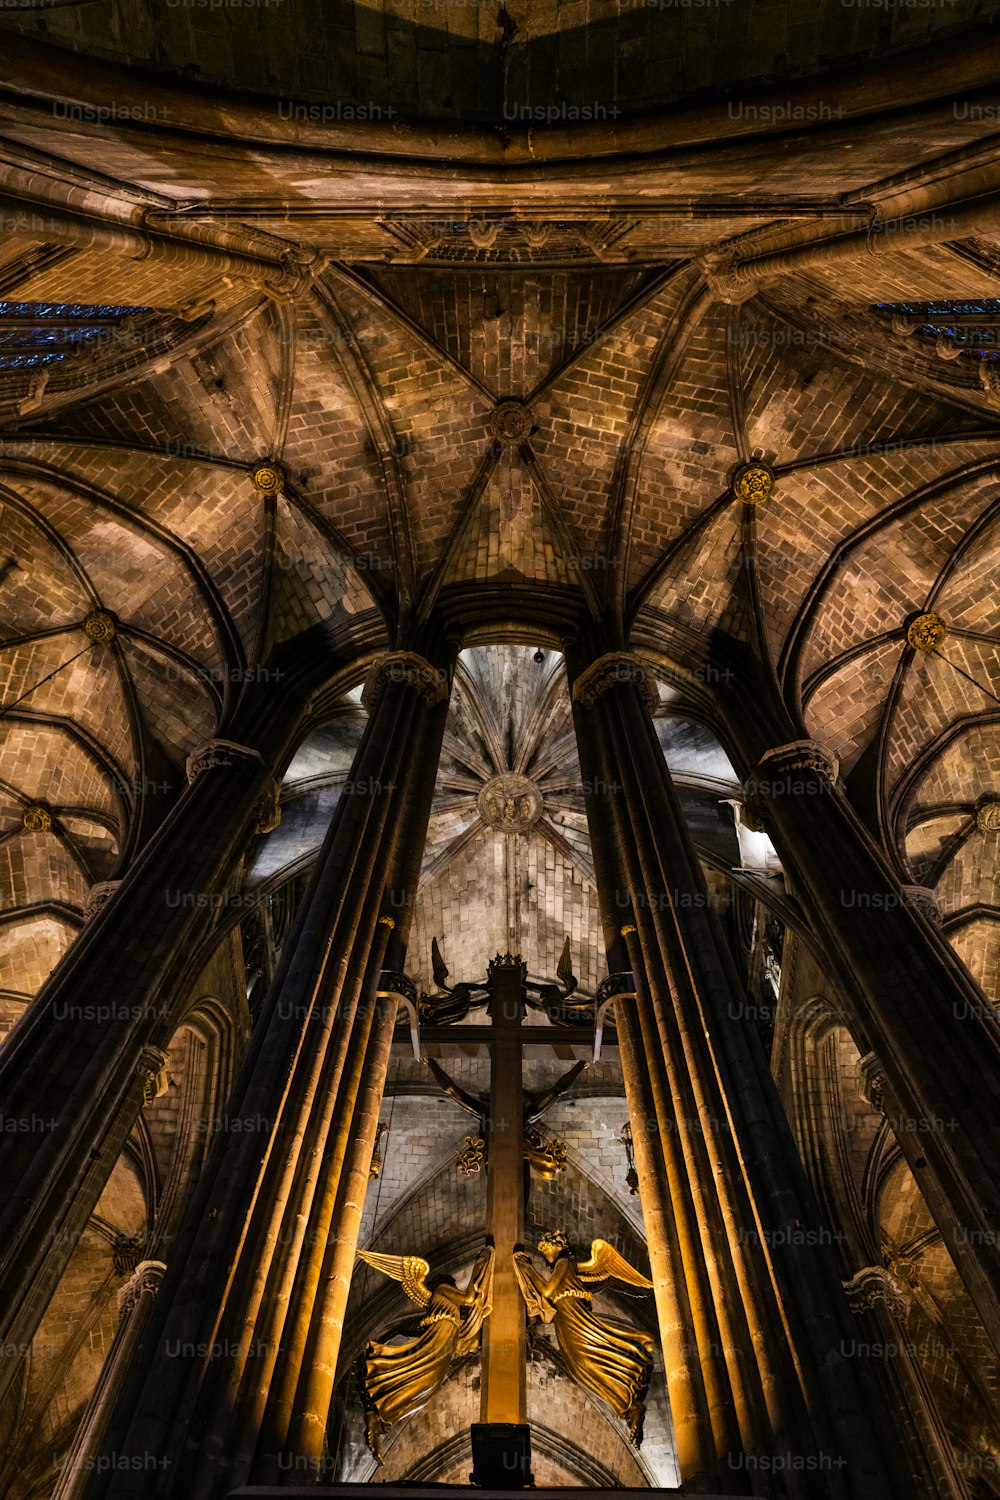 Vista interior de la catedral gótica de Barcelona, también conocida como La Seu, situada en el corazón del Barrio Gótico de Barcelona.